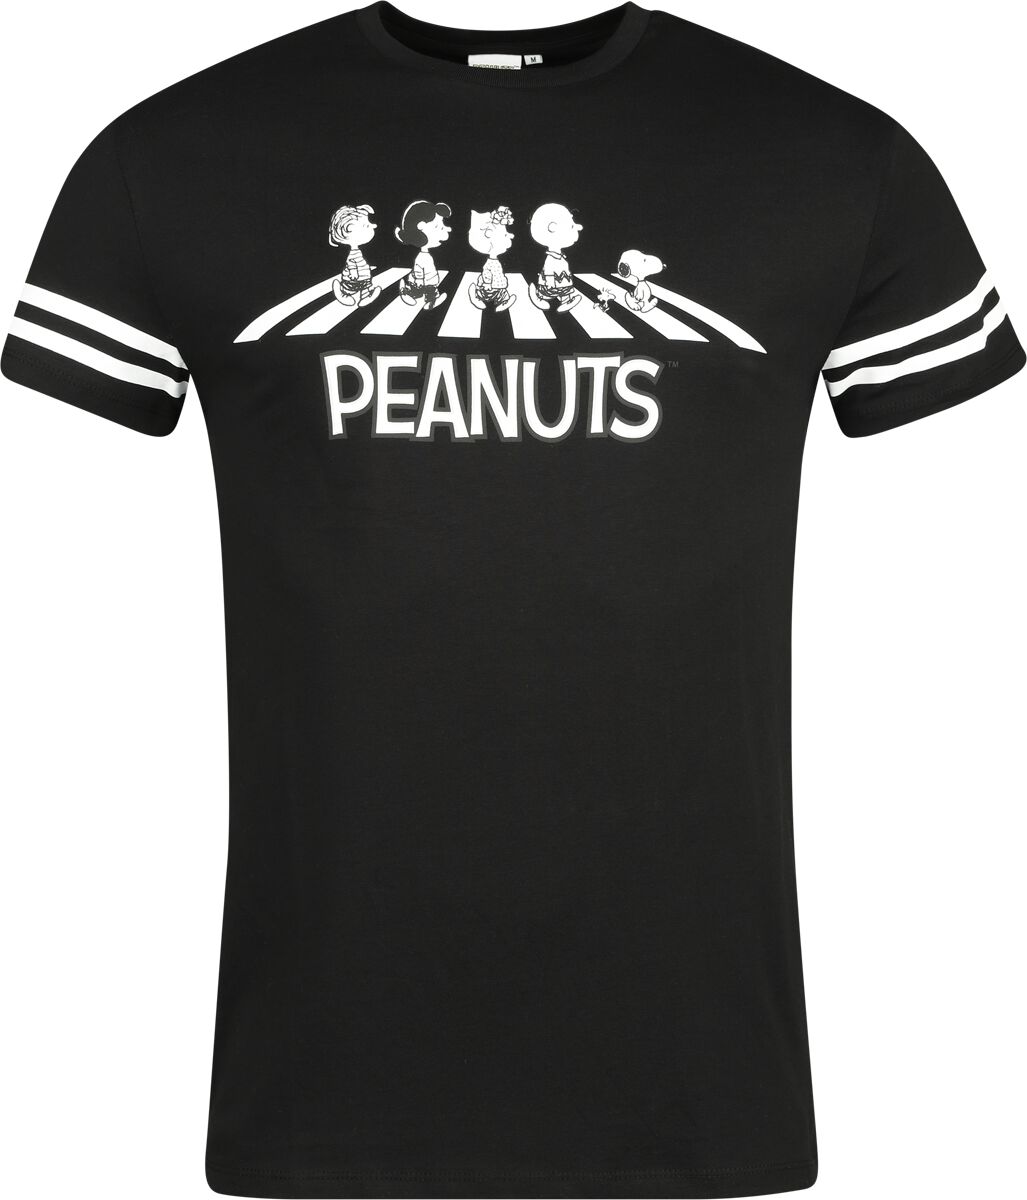 Peanuts T-Shirt - Walking Group - S bis 3XL - für Männer - Größe XXL - multicolor  - EMP exklusives Merchandise!